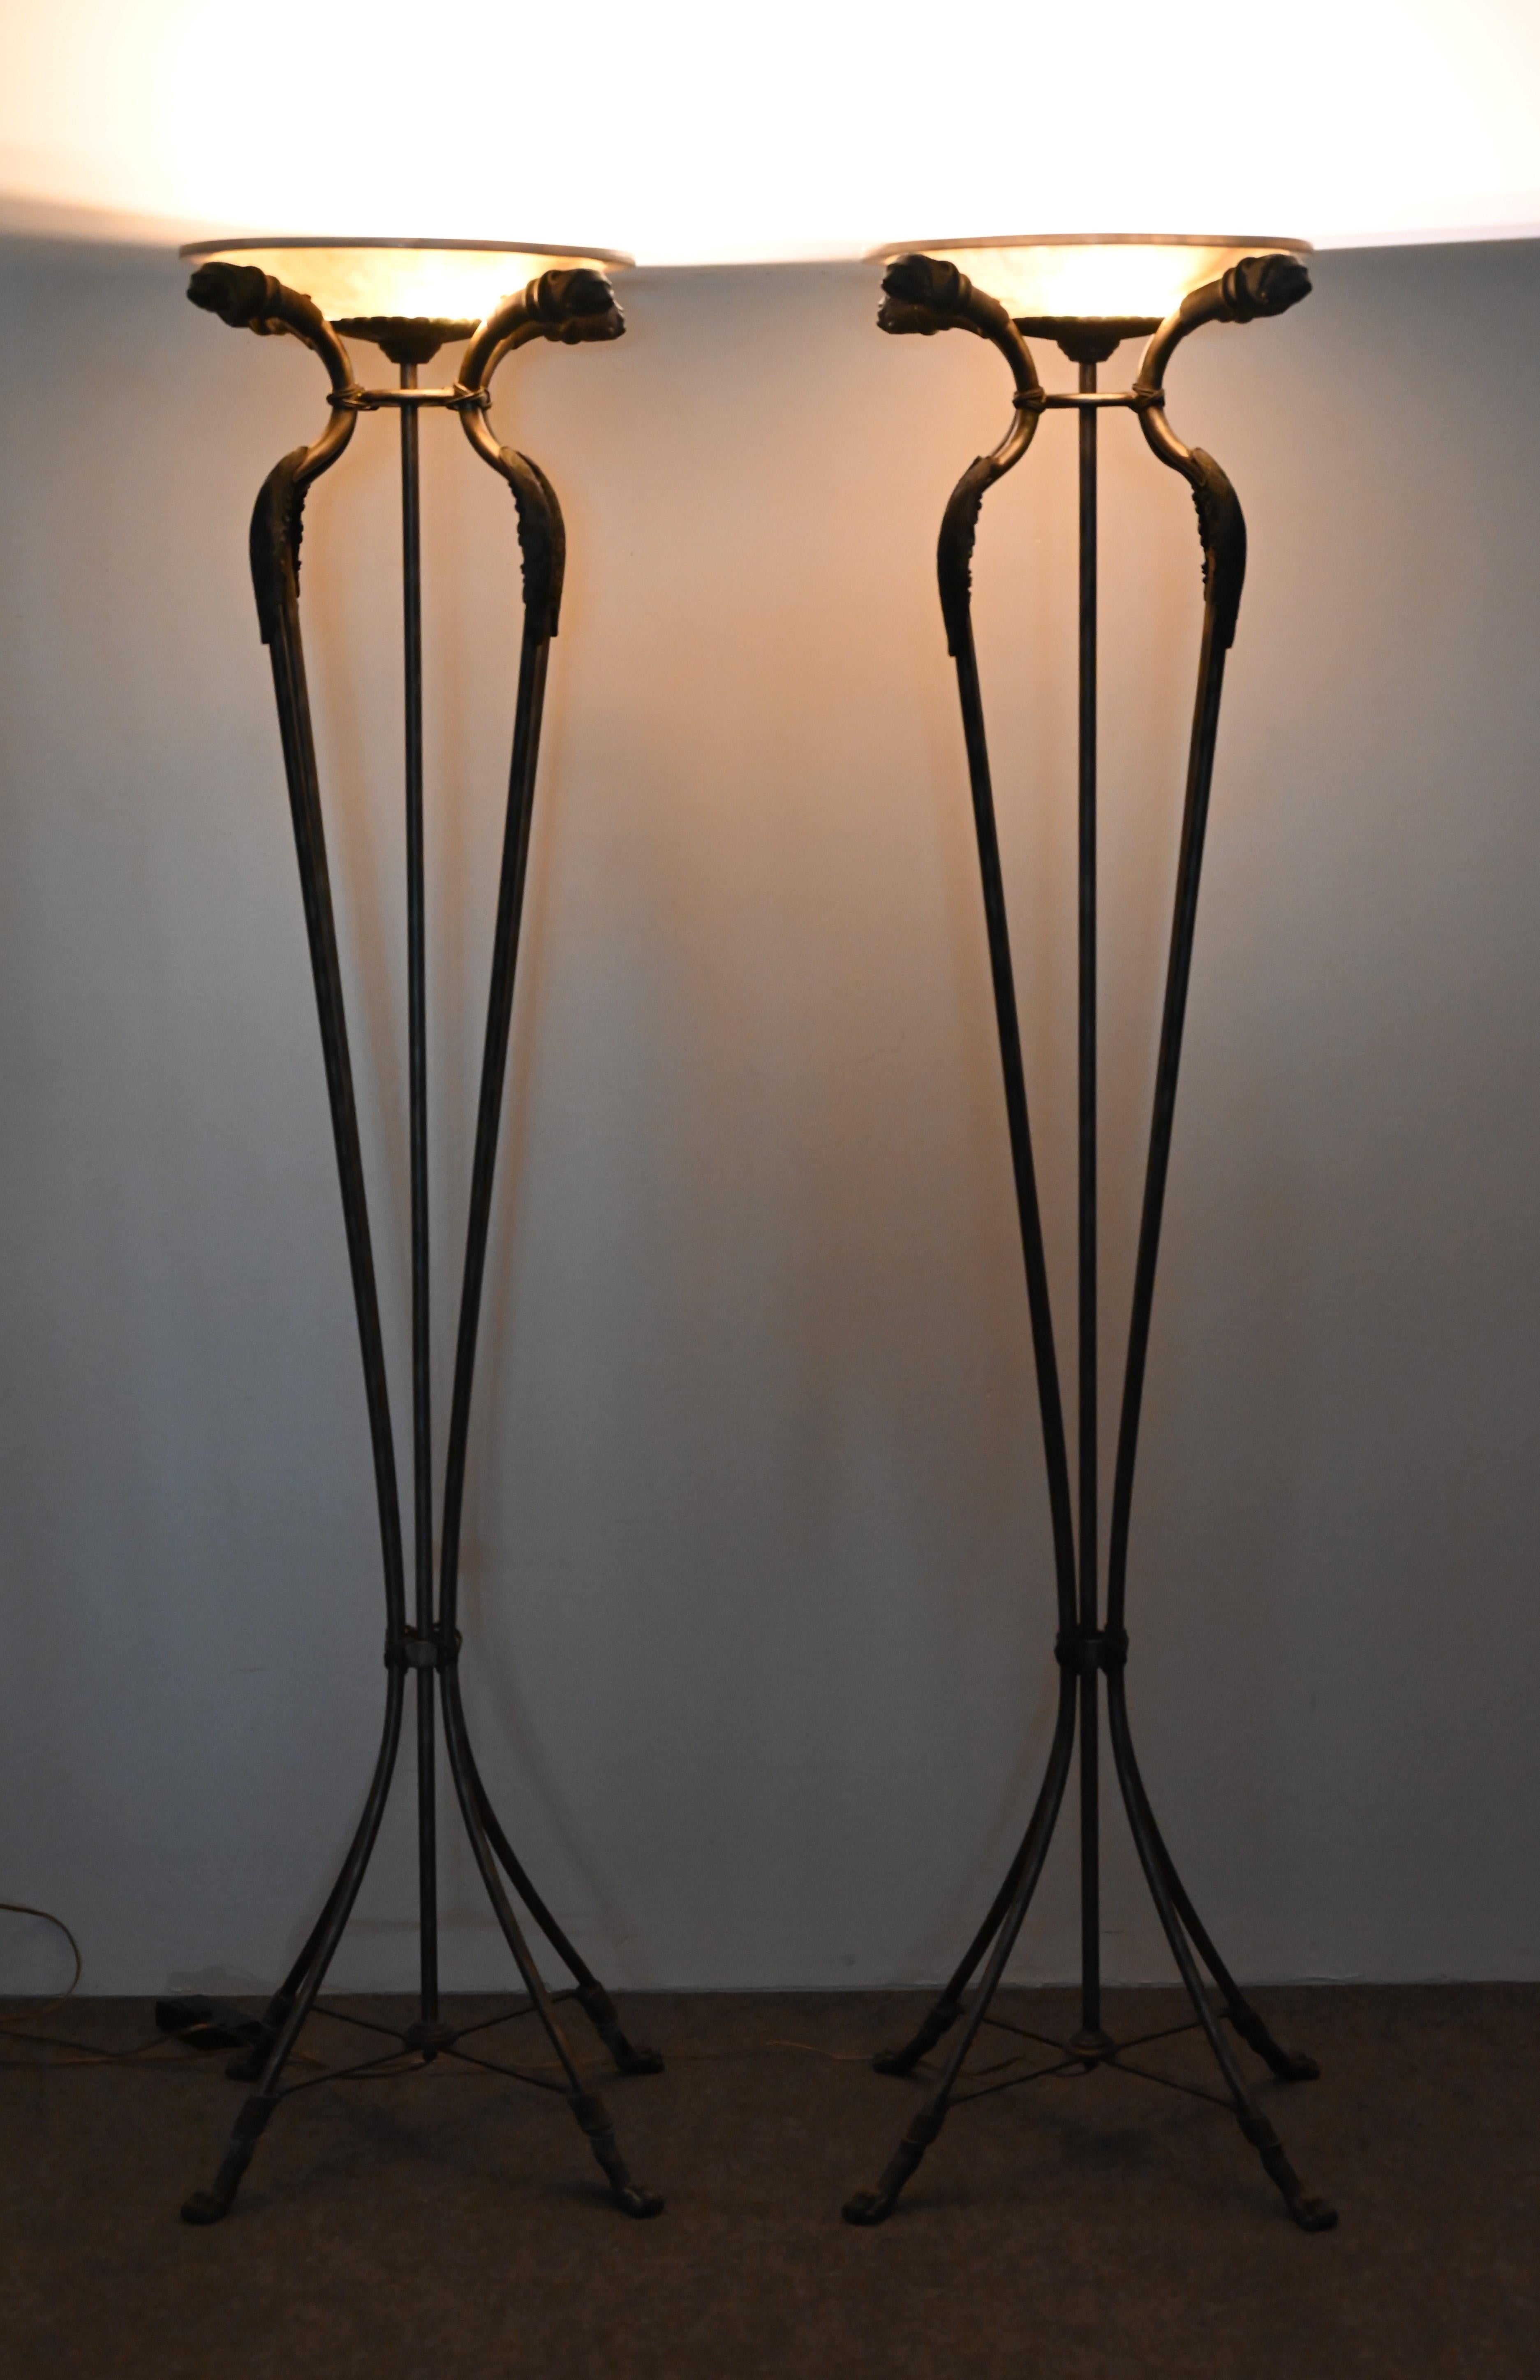 Magnifique paire de torchères en bronze sur acier avec des abat-jours tesselés. La paire de lampes est attribuée à Maitland Smith, mais elle n'est pas marquée. Cette jolie paire de lampadaires s'accorde parfaitement avec les antiquités et les